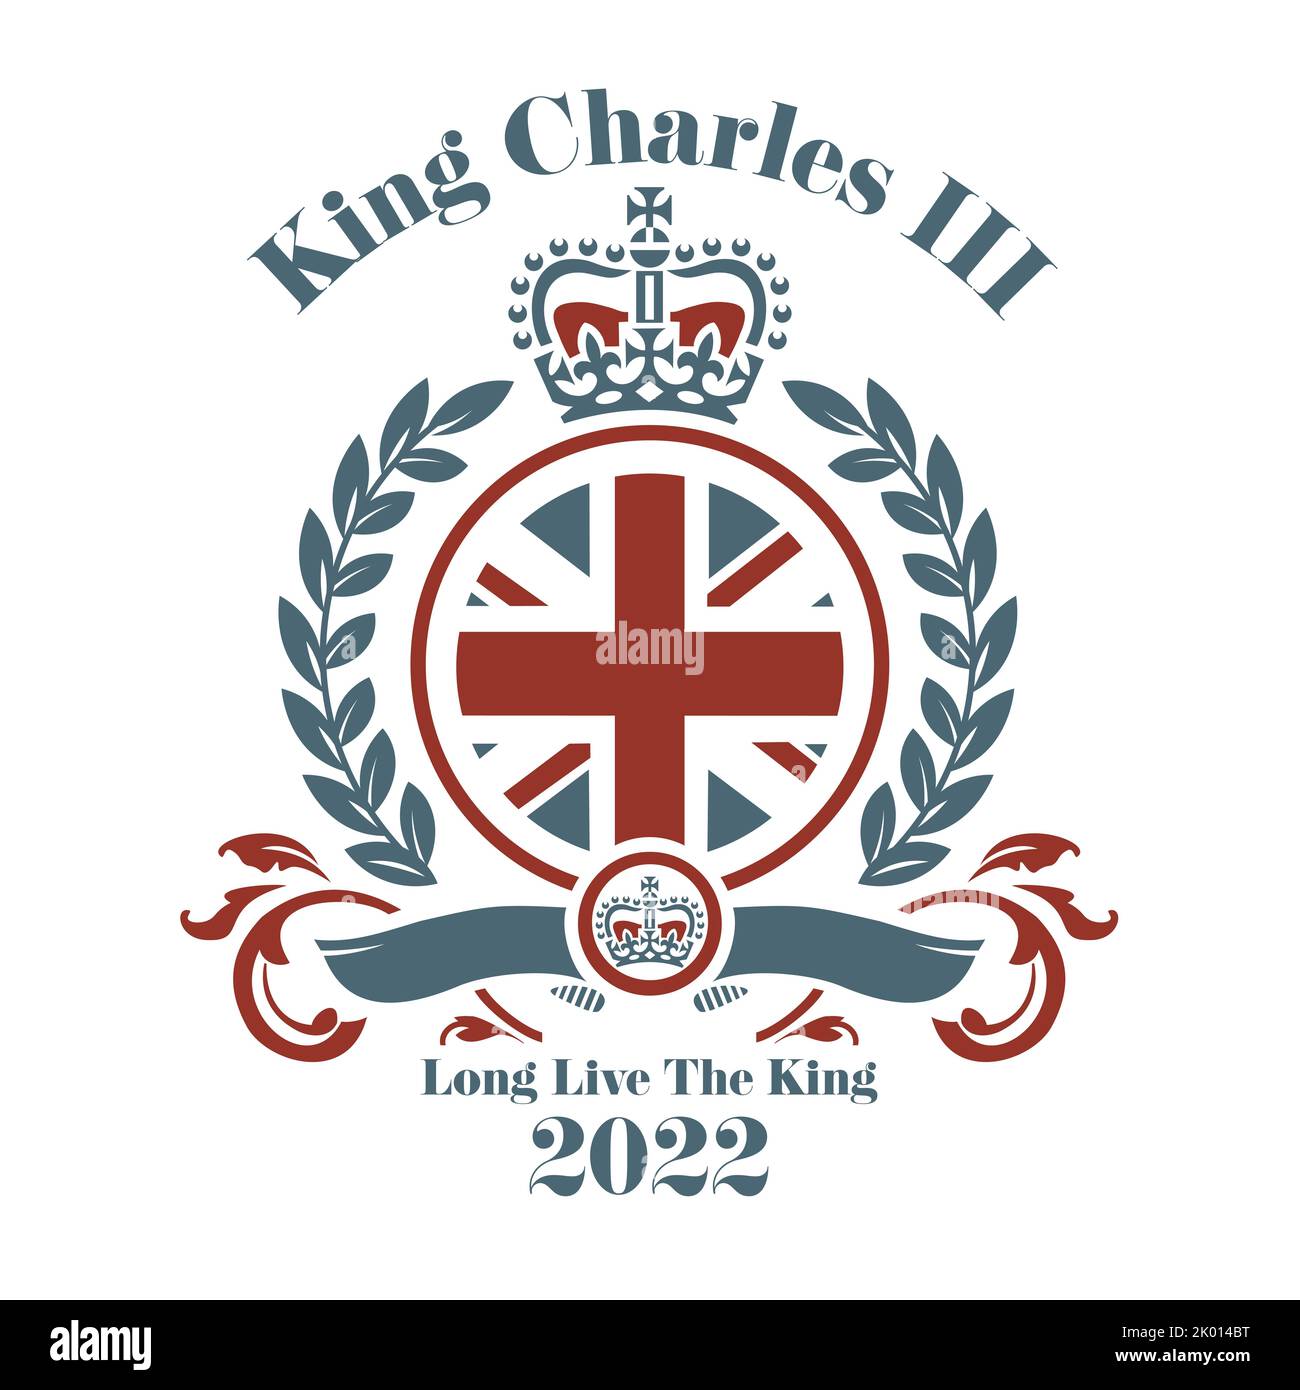 König Charles III 2022 Vektorgrafik - Prinz Charles wird König Charles nach dem Tod der Königin. Stockfoto